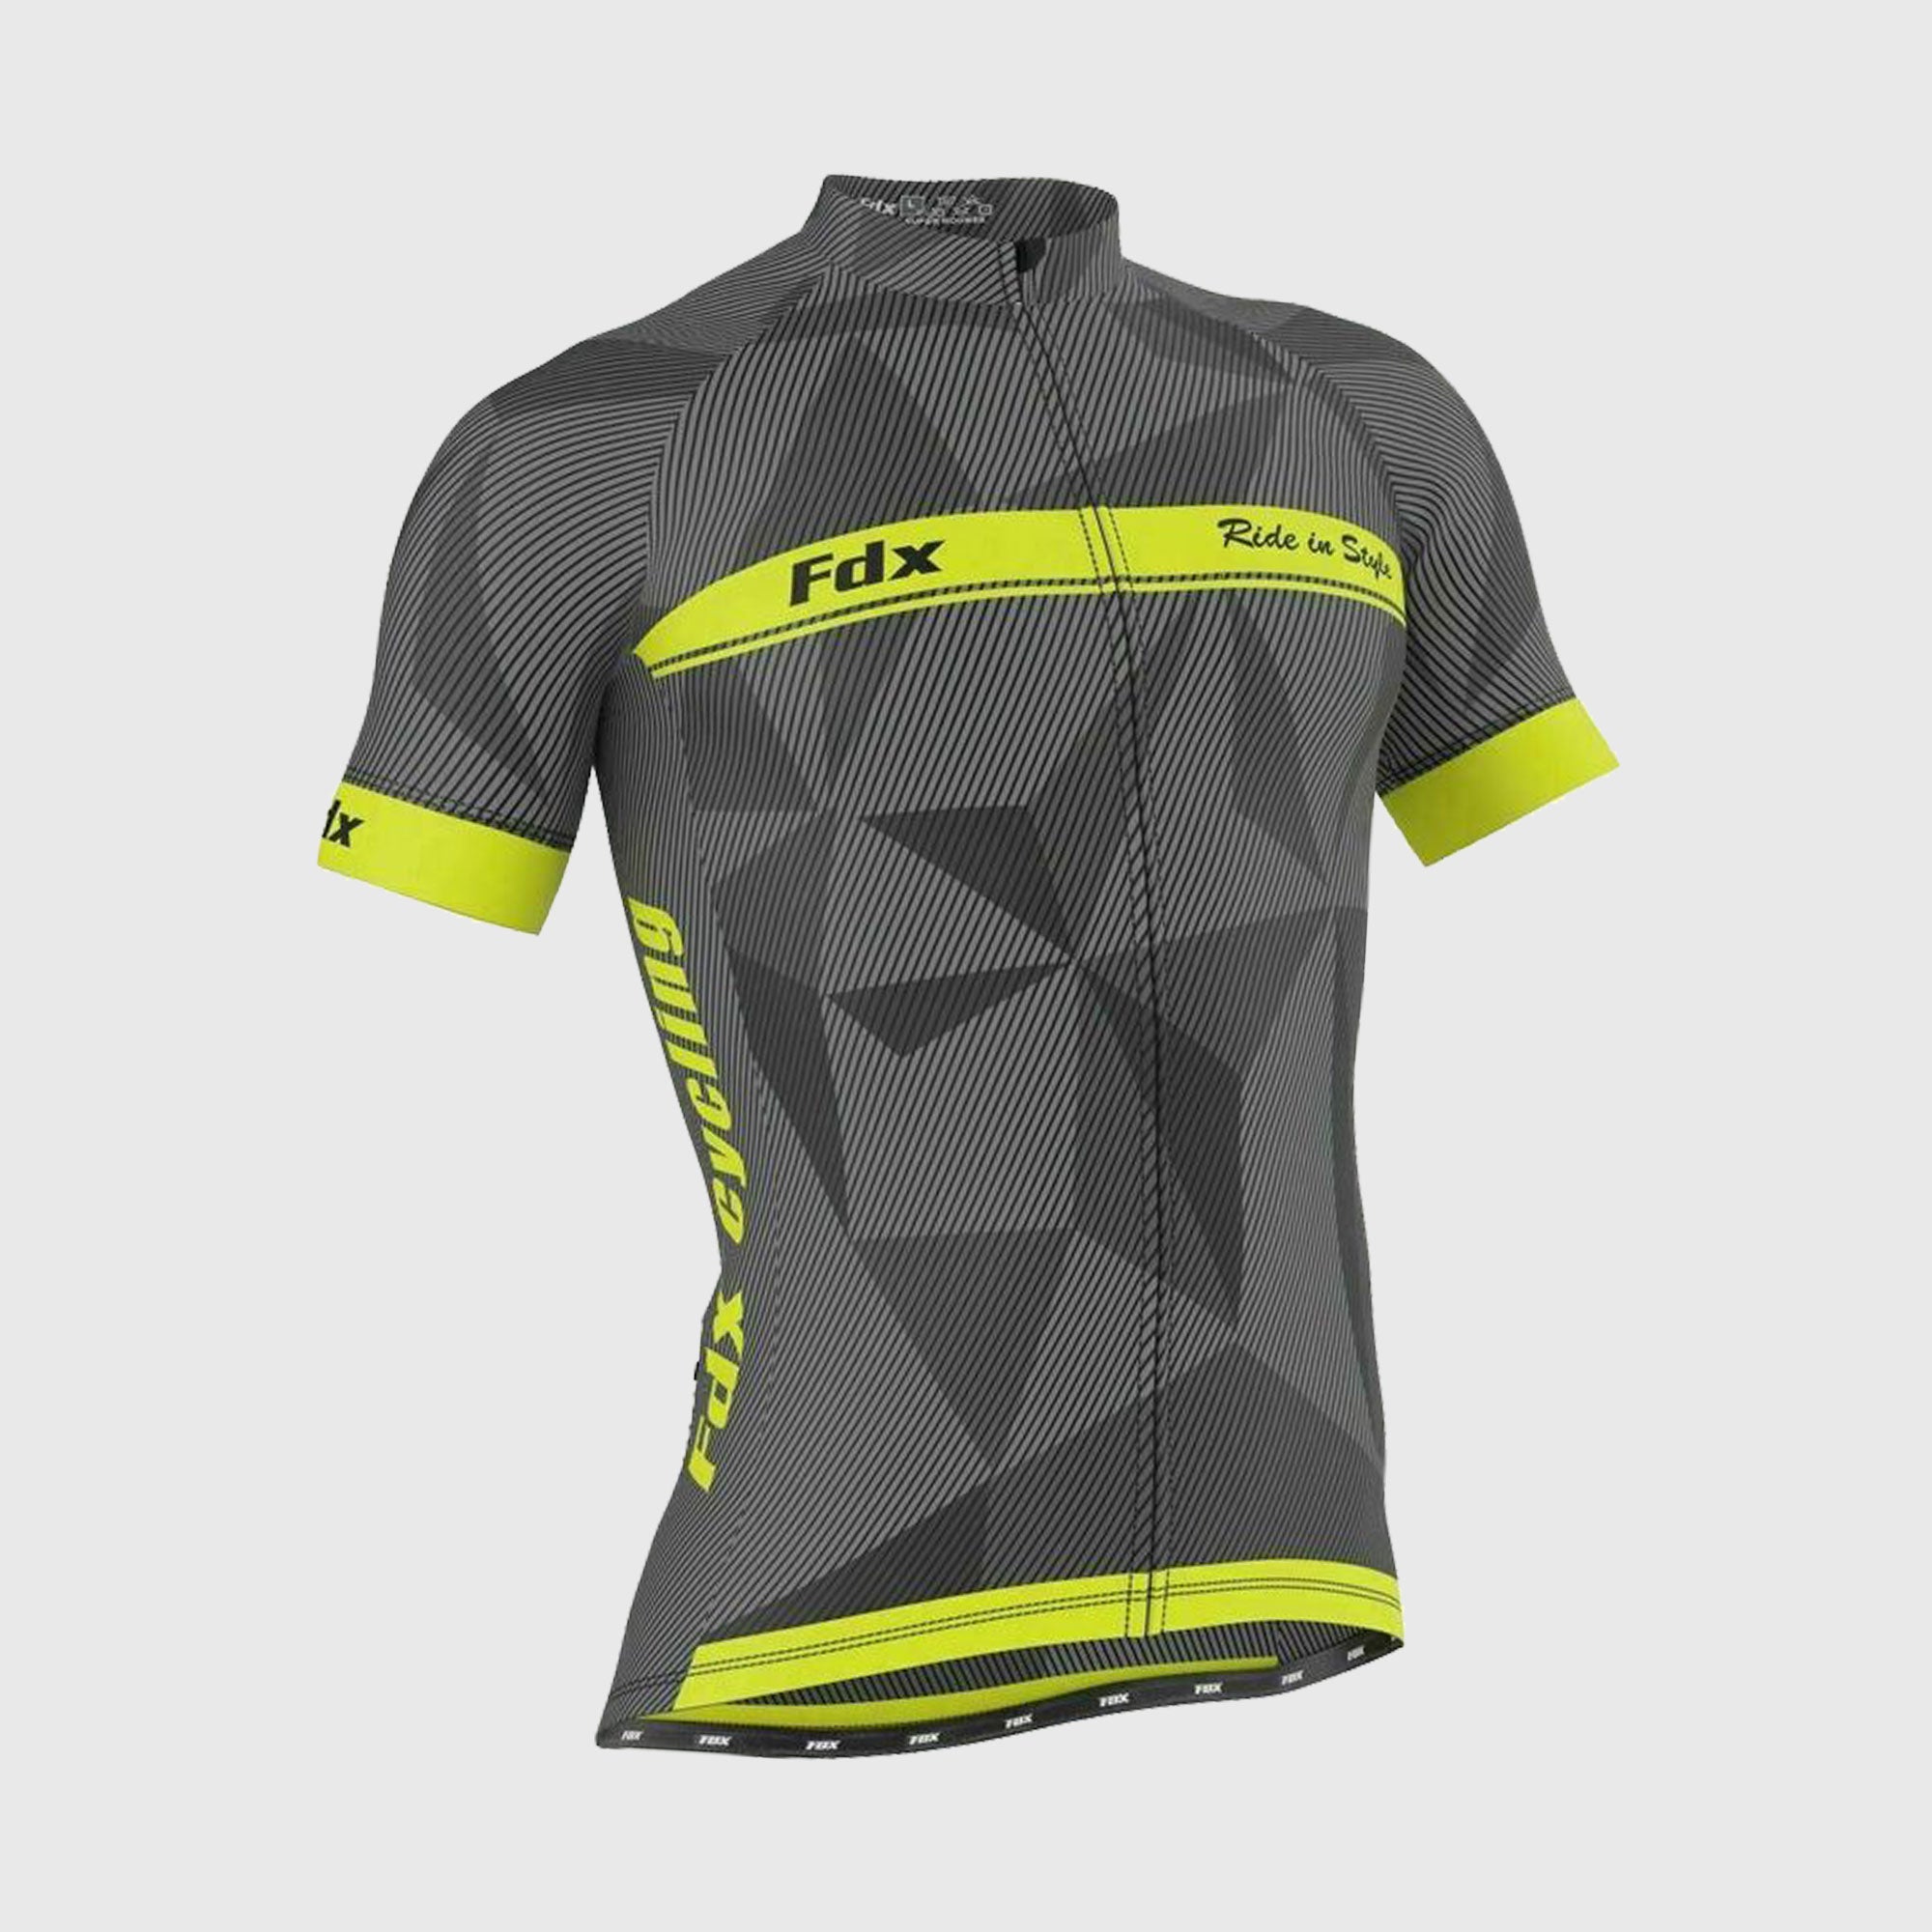 Fdx Mens Yellow & Grey Short Sleeve Cycling Jersey for Summer Best Road Bike Wear Top Light Weight, Full Zipper, Pockets & Hi-viz Reflectors - Splinter